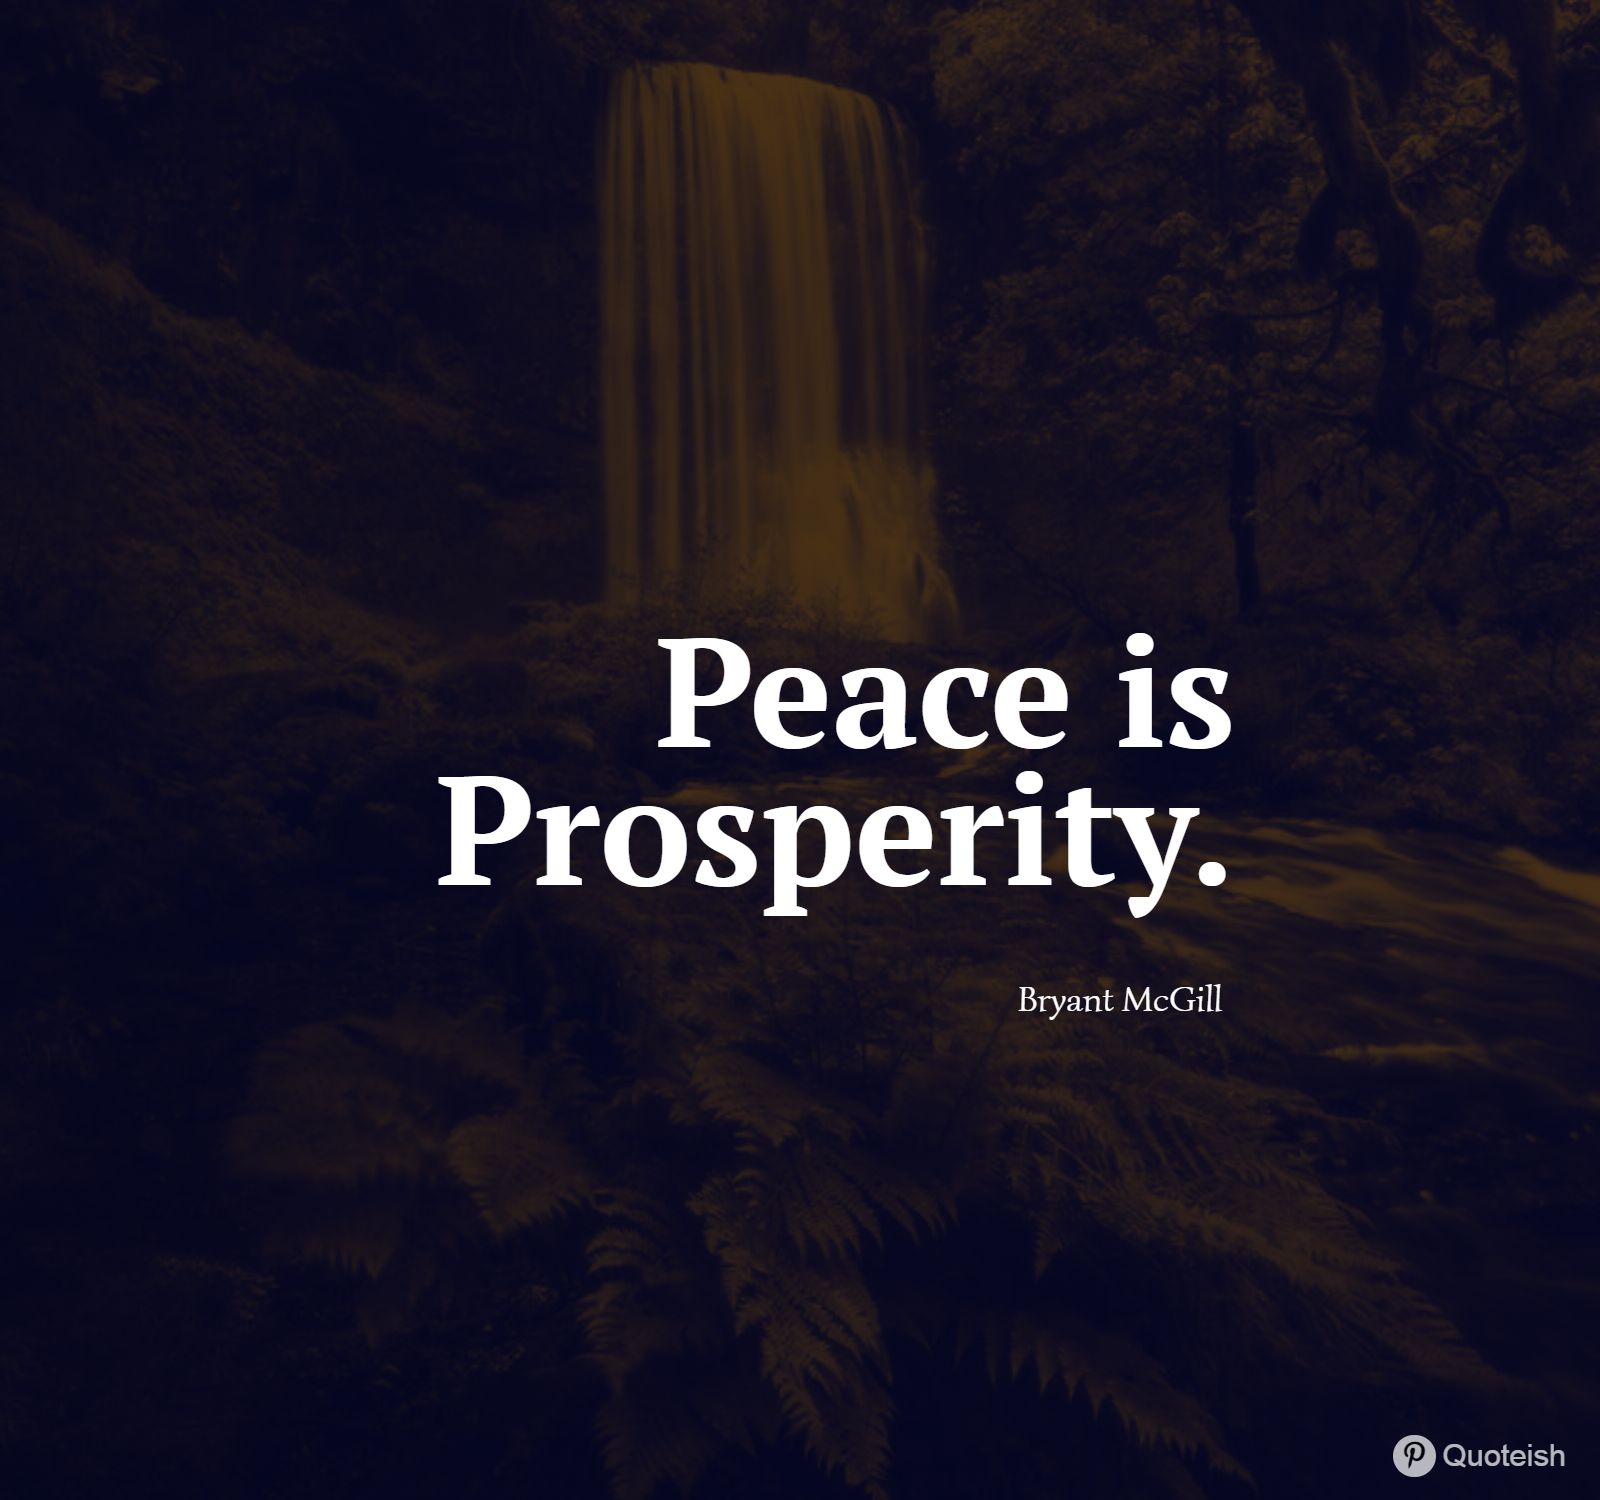 essay on prosperity lies in peace